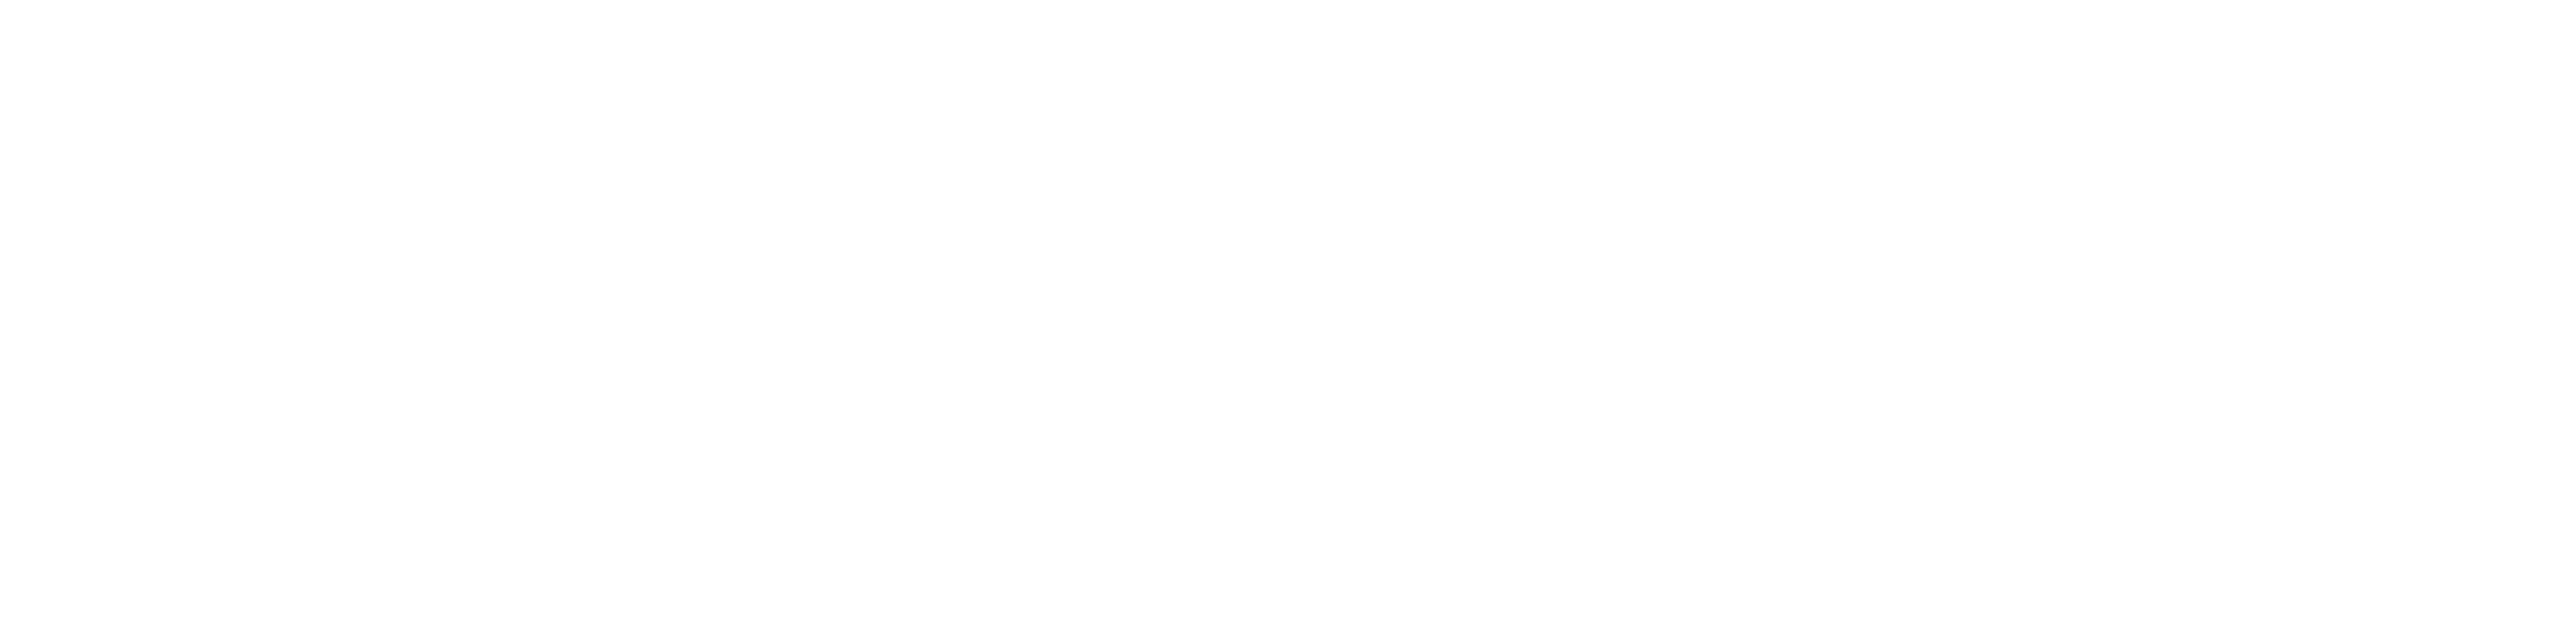 Lewis Music Studio